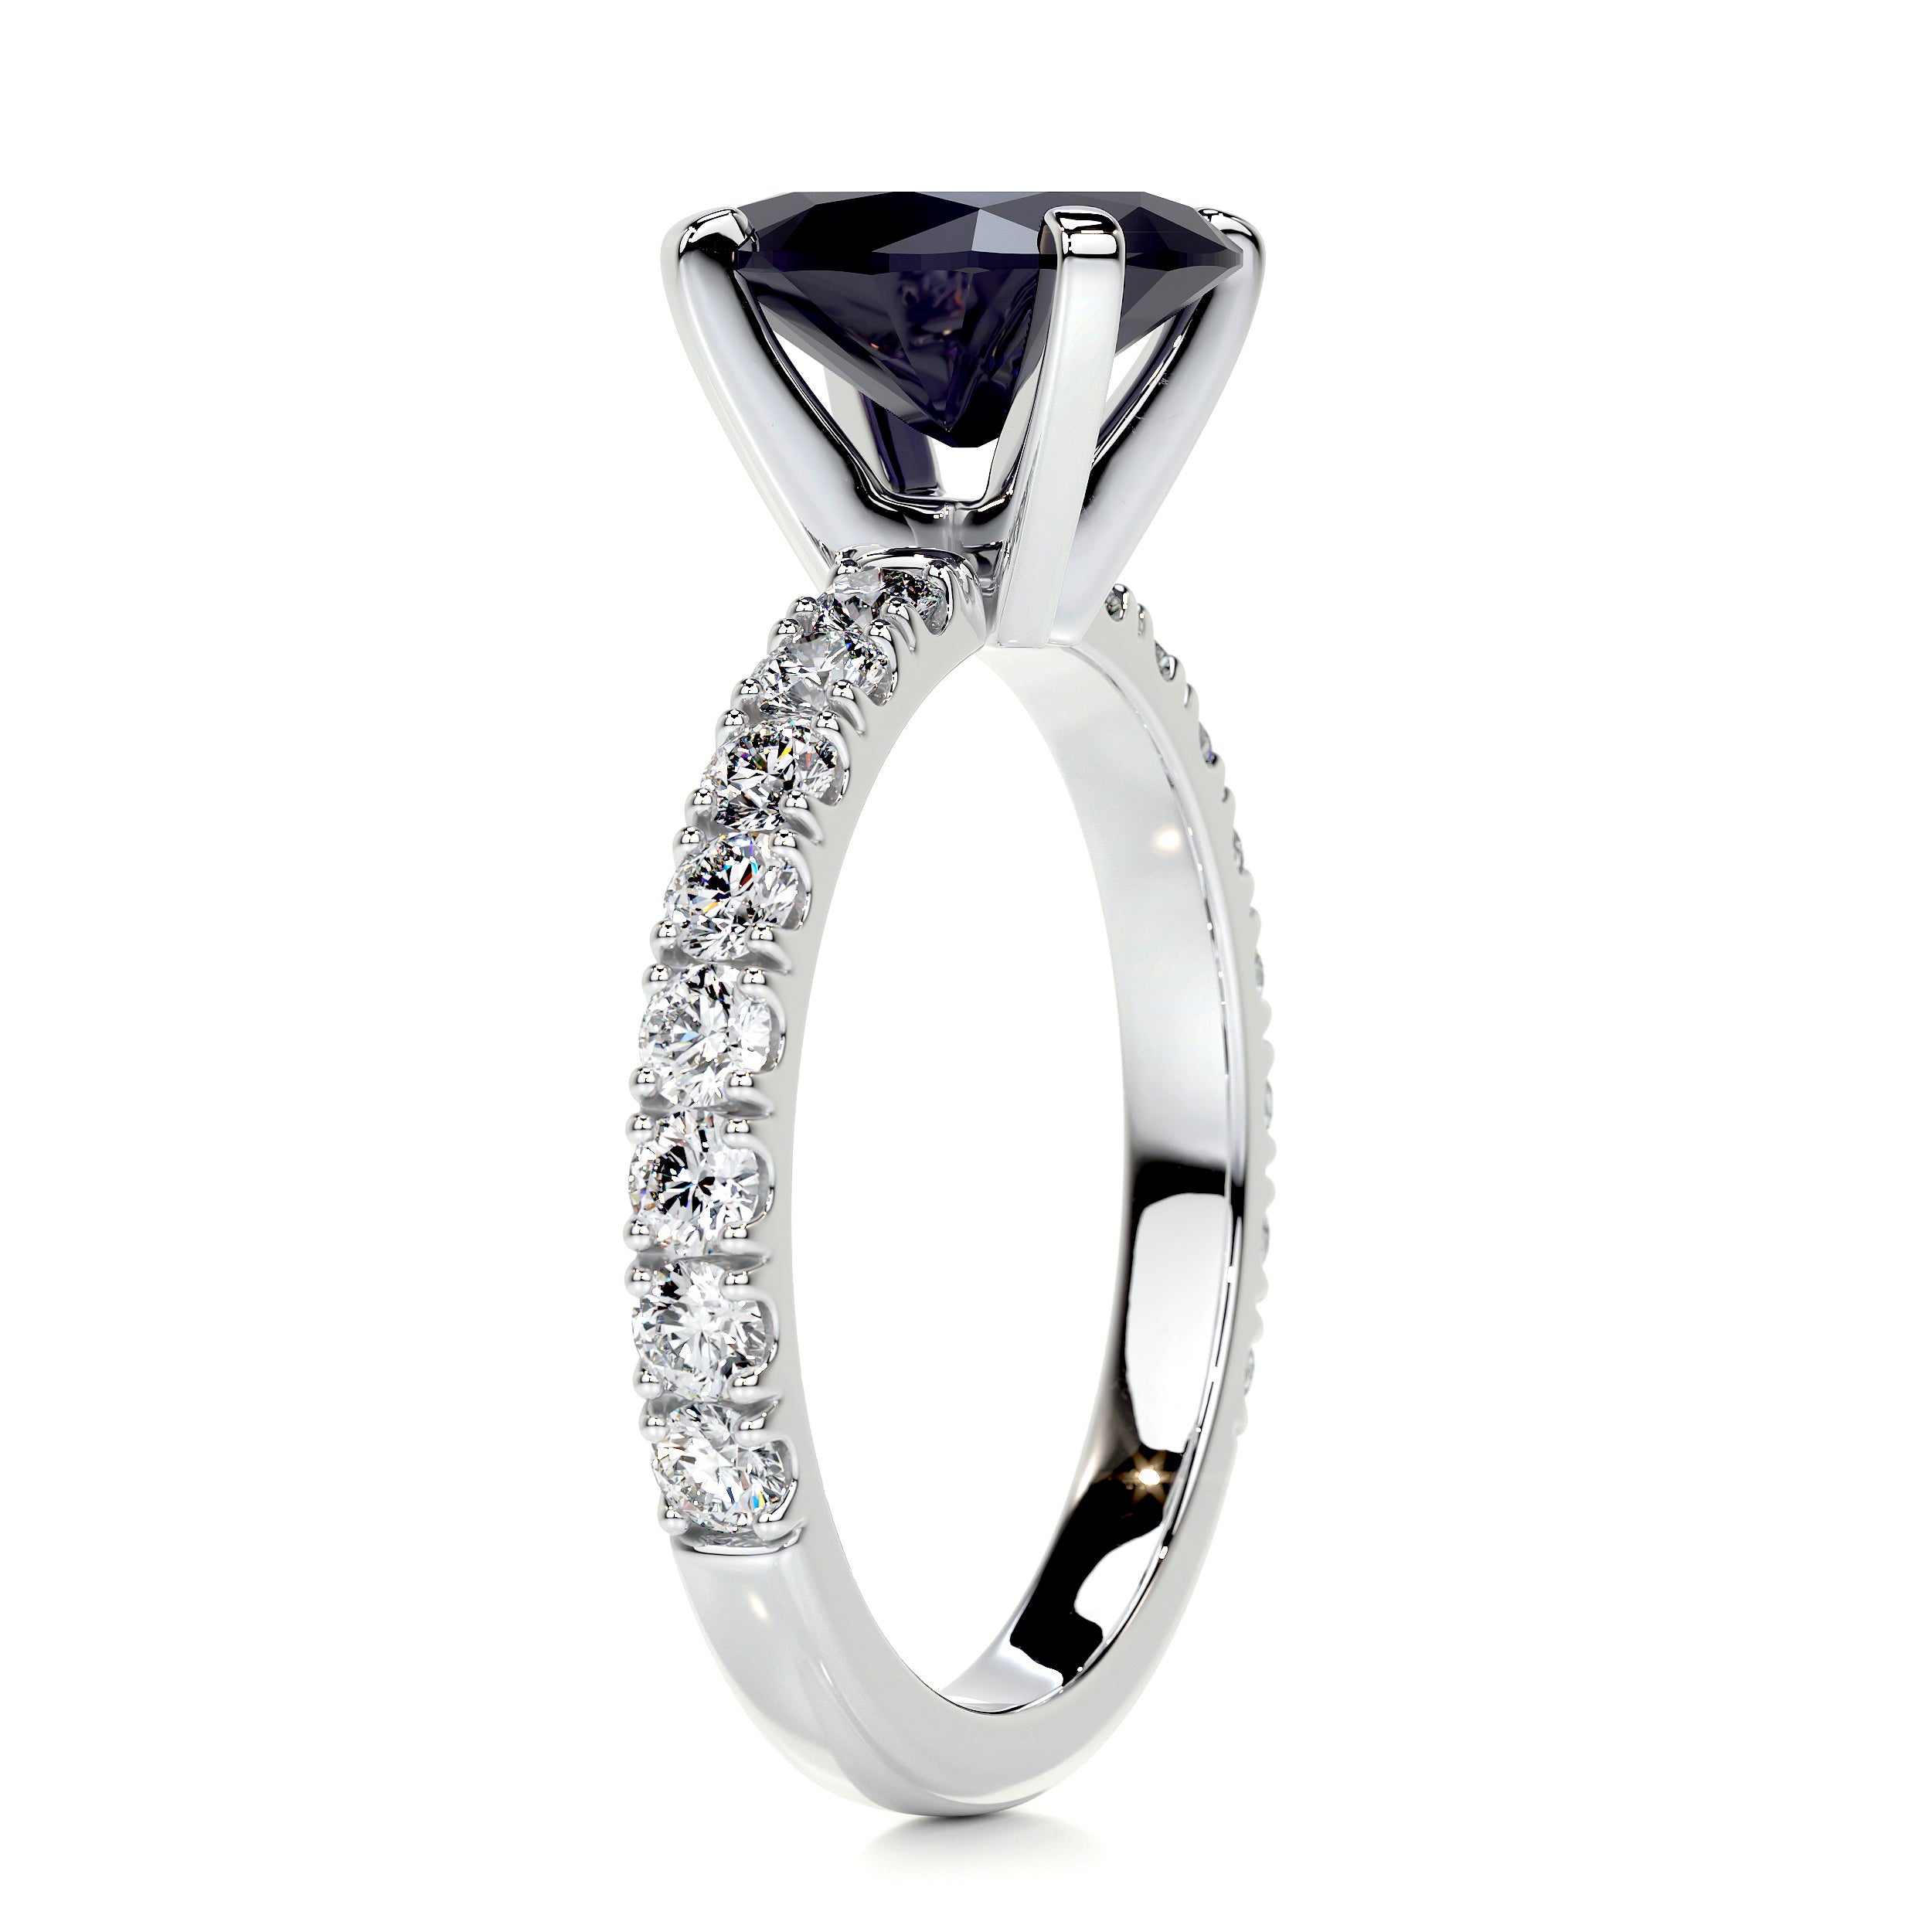 Alison Gemstone & Diamonds Ring   (3 Carat) -14K White Gold